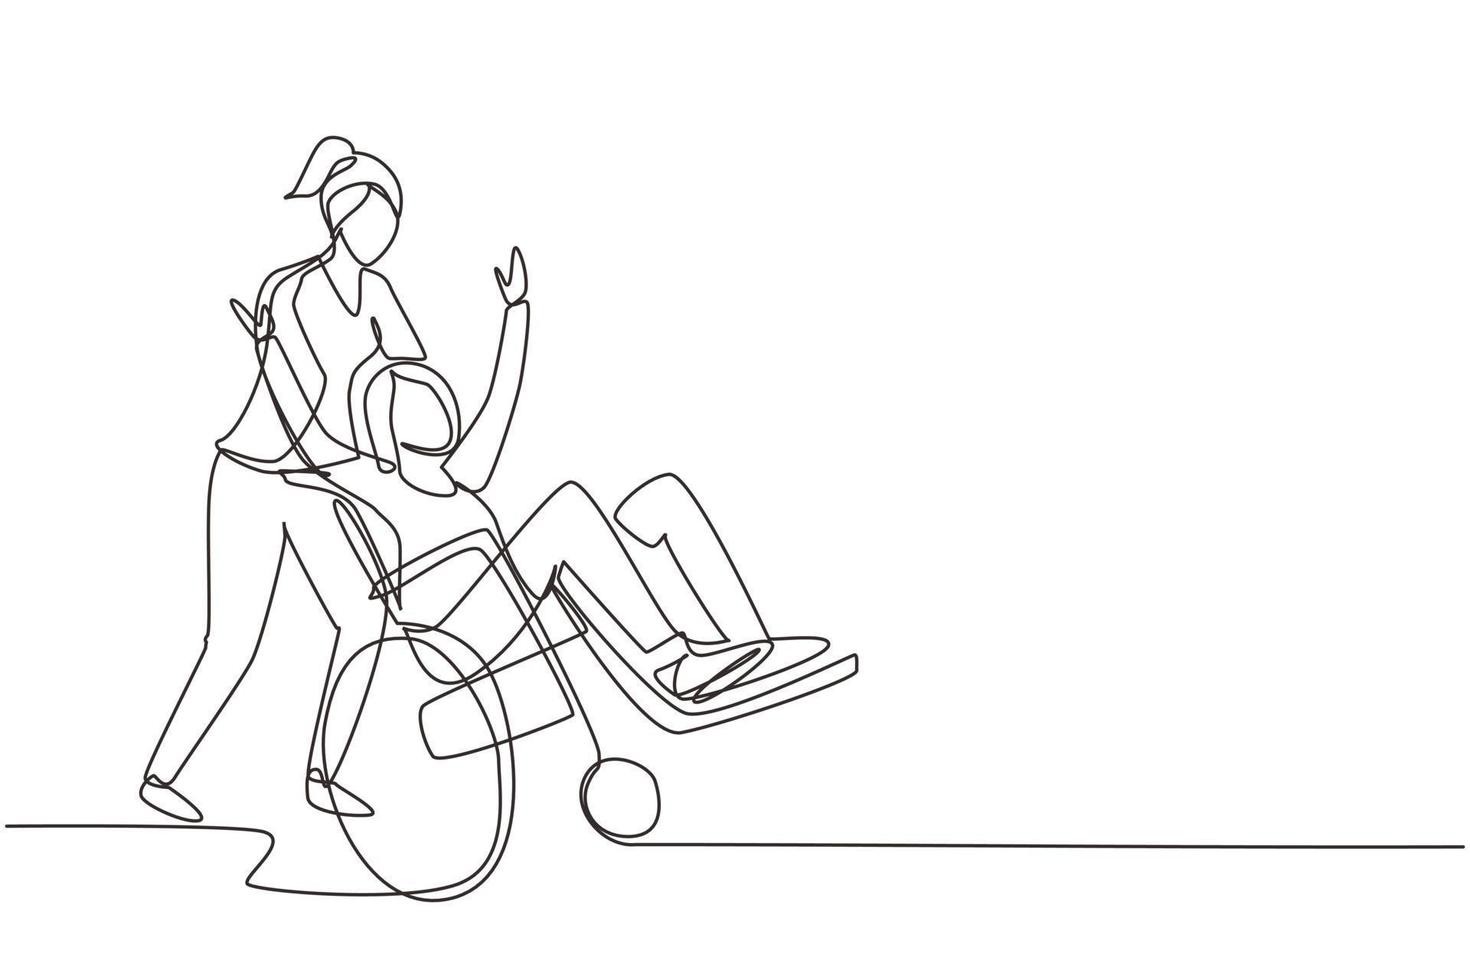 une ligne continue dessinant une jeune femme volontaire aide une vieille femme handicapée, à rouler en fauteuil roulant dans le parc. soins familiaux, bénévolat, concept de soins aux personnes handicapées. graphique vectoriel de conception de dessin à une seule ligne